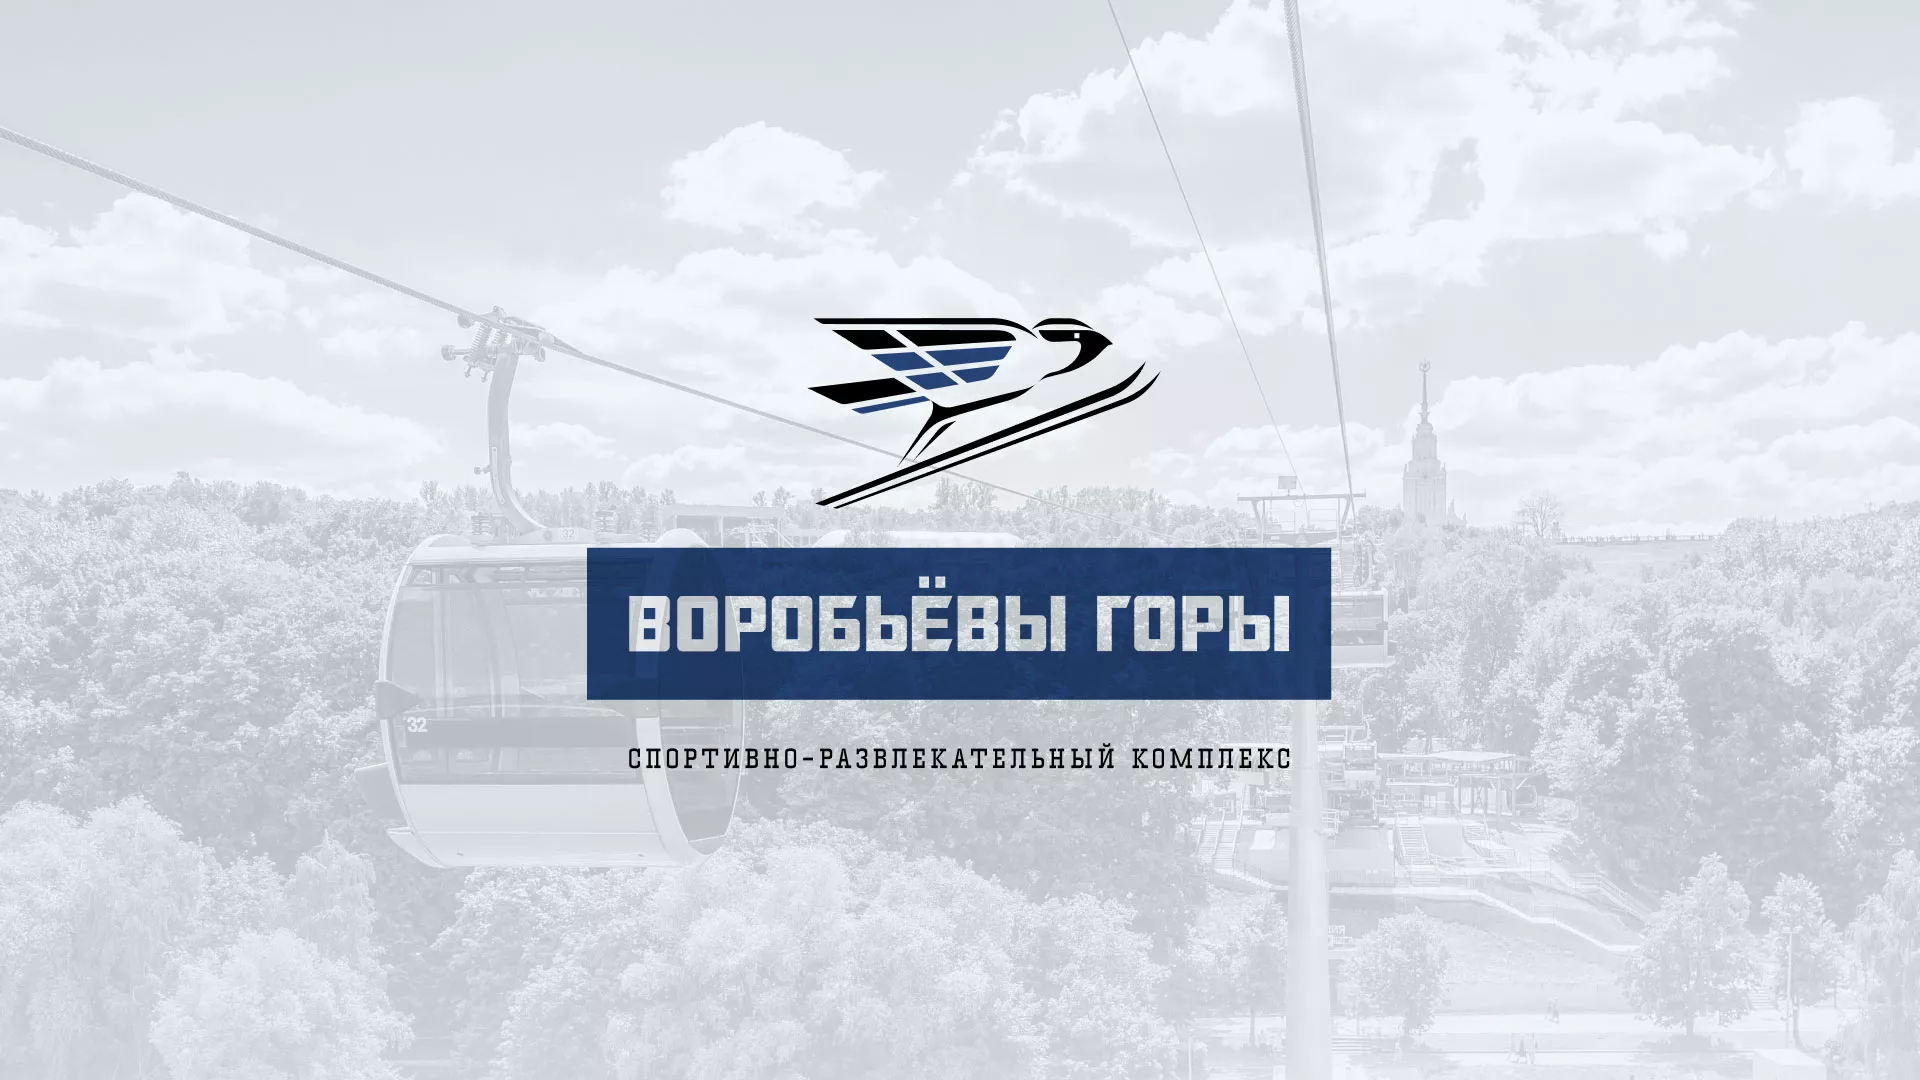 Разработка сайта в Елизово для спортивно-развлекательного комплекса «Воробьёвы горы»